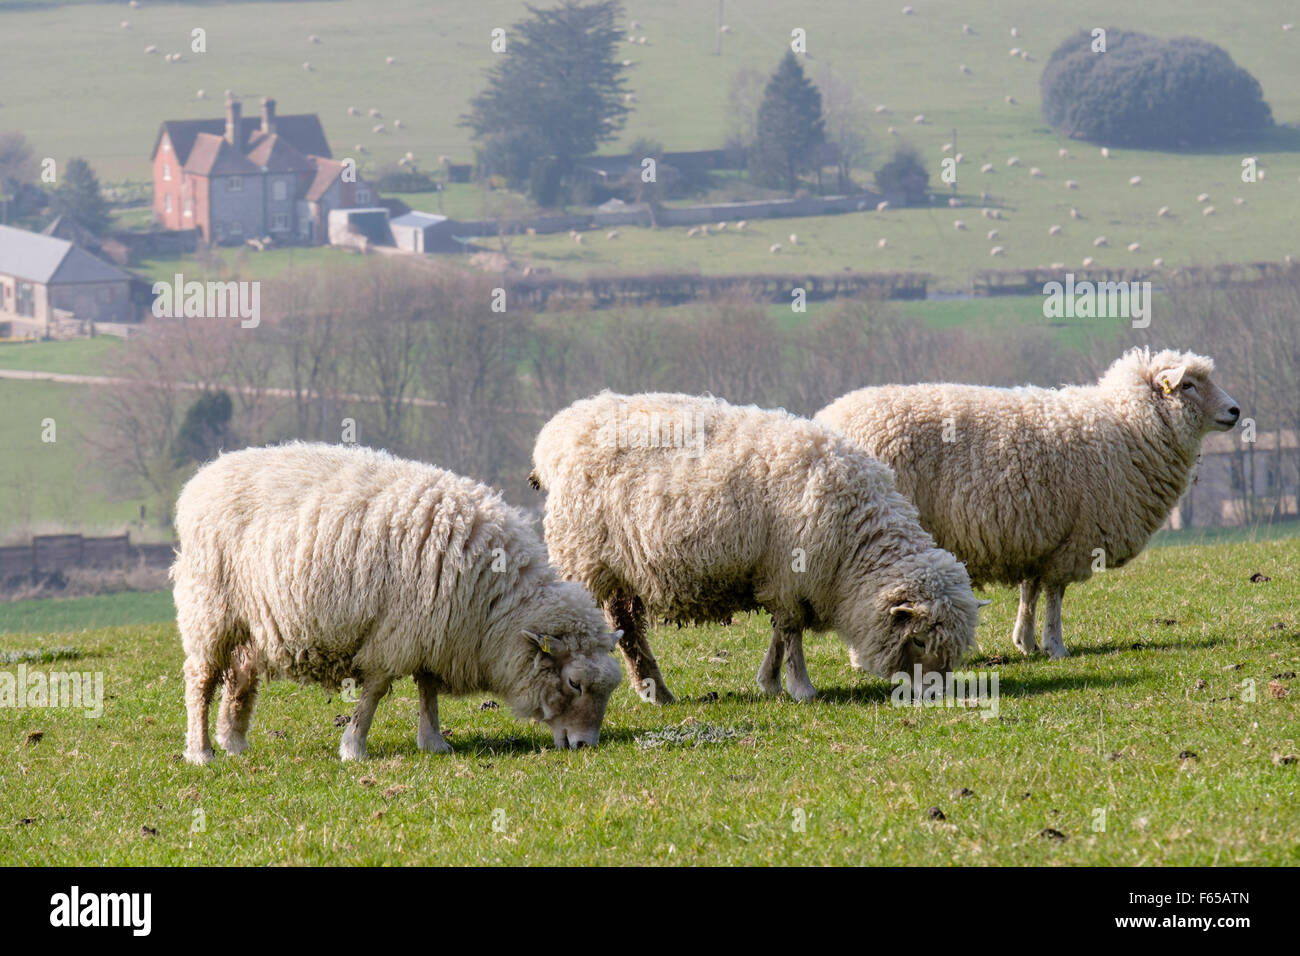 Trois éleveuses de moutons Dorset sonder à la ferme sur la Descente de Haye dans le parc national de South Downs. West Dean, Chichester, West Sussex, Angleterre, Royaume-Uni, Banque D'Images